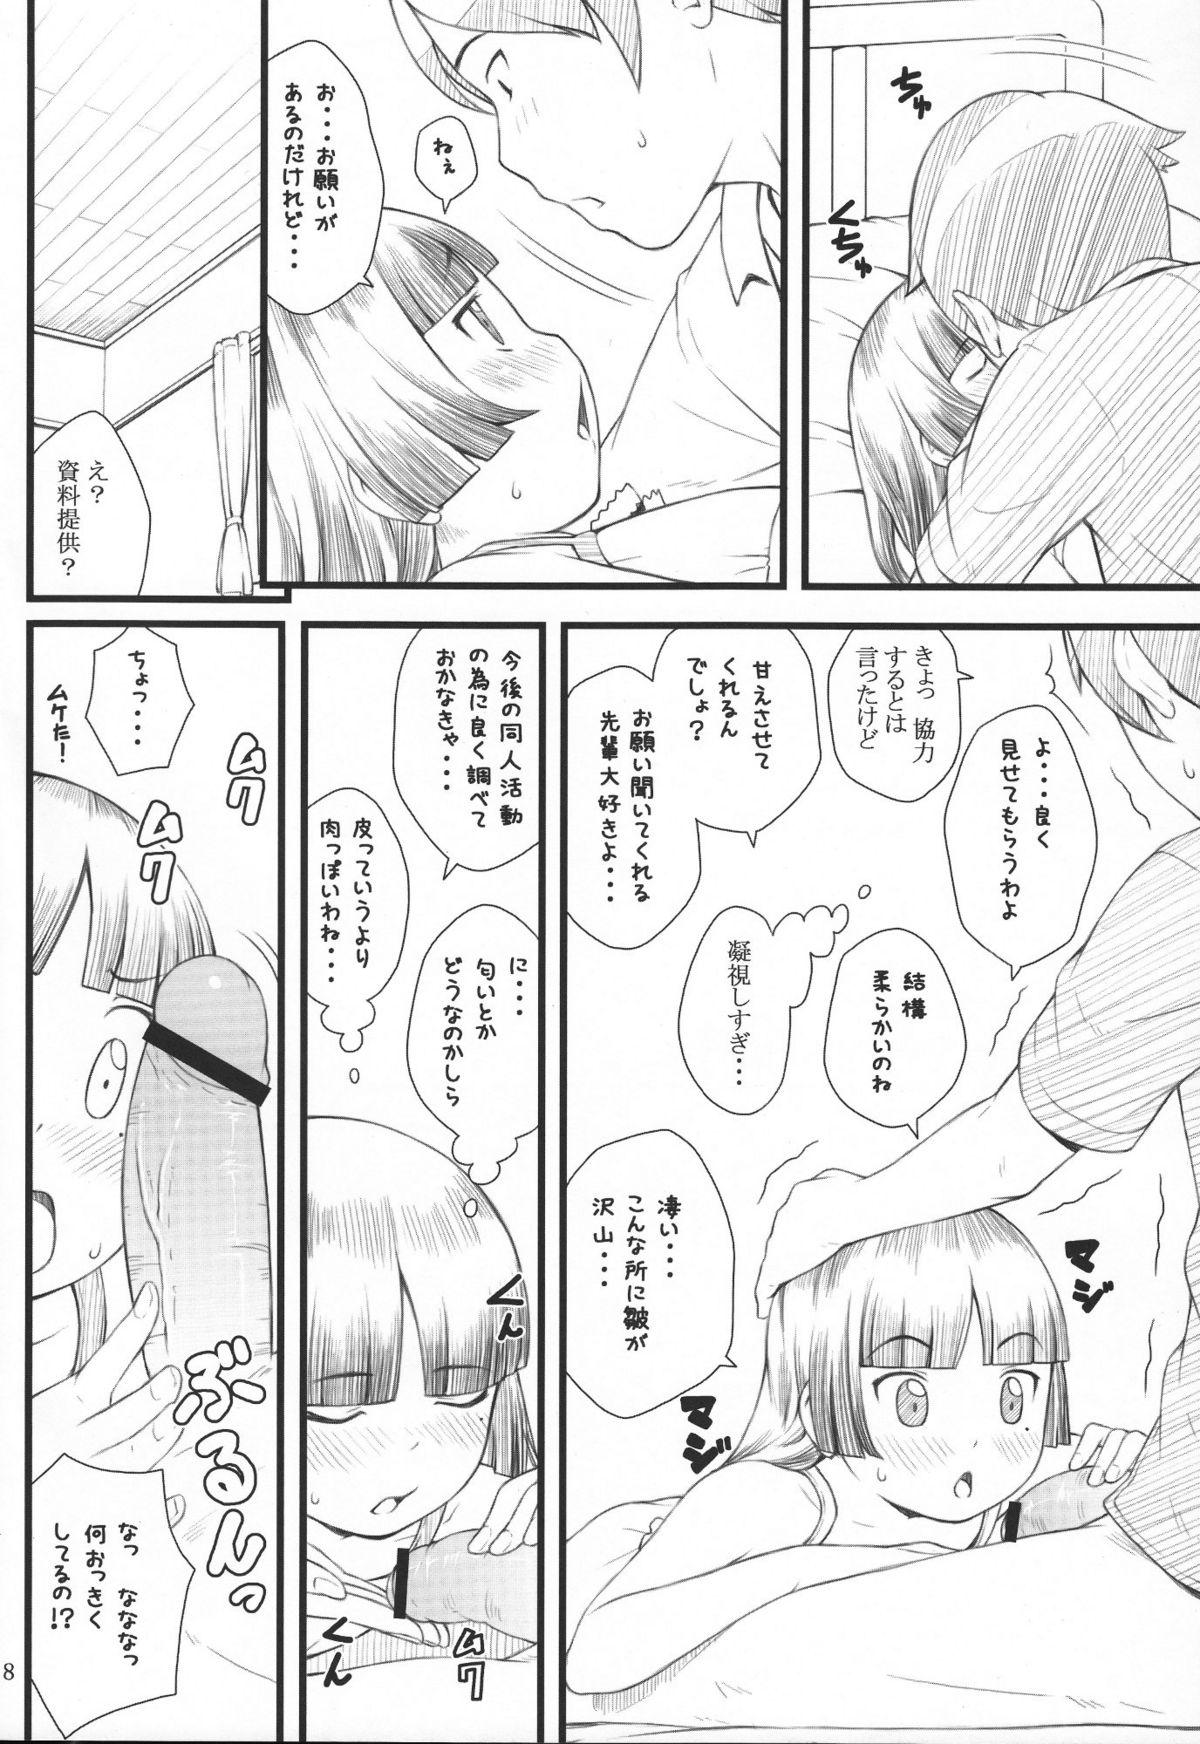 Massages Kuroneko+Shiro=Pink - Ore no imouto ga konna ni kawaii wake ga nai Pussy Play - Page 7